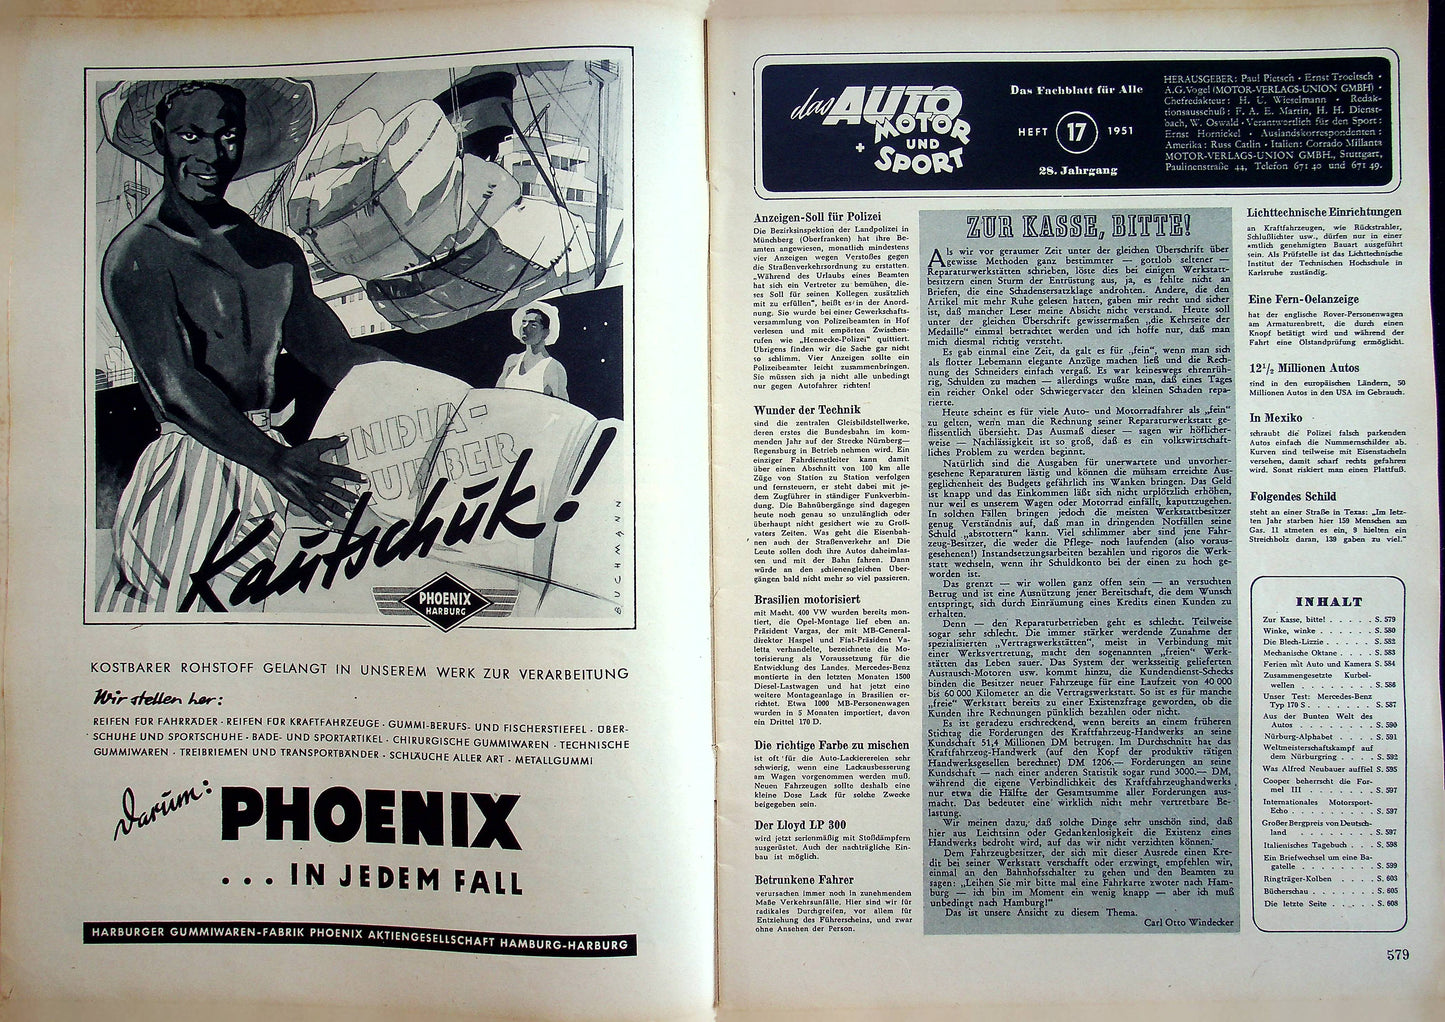 Auto Motor und Sport 17/1951